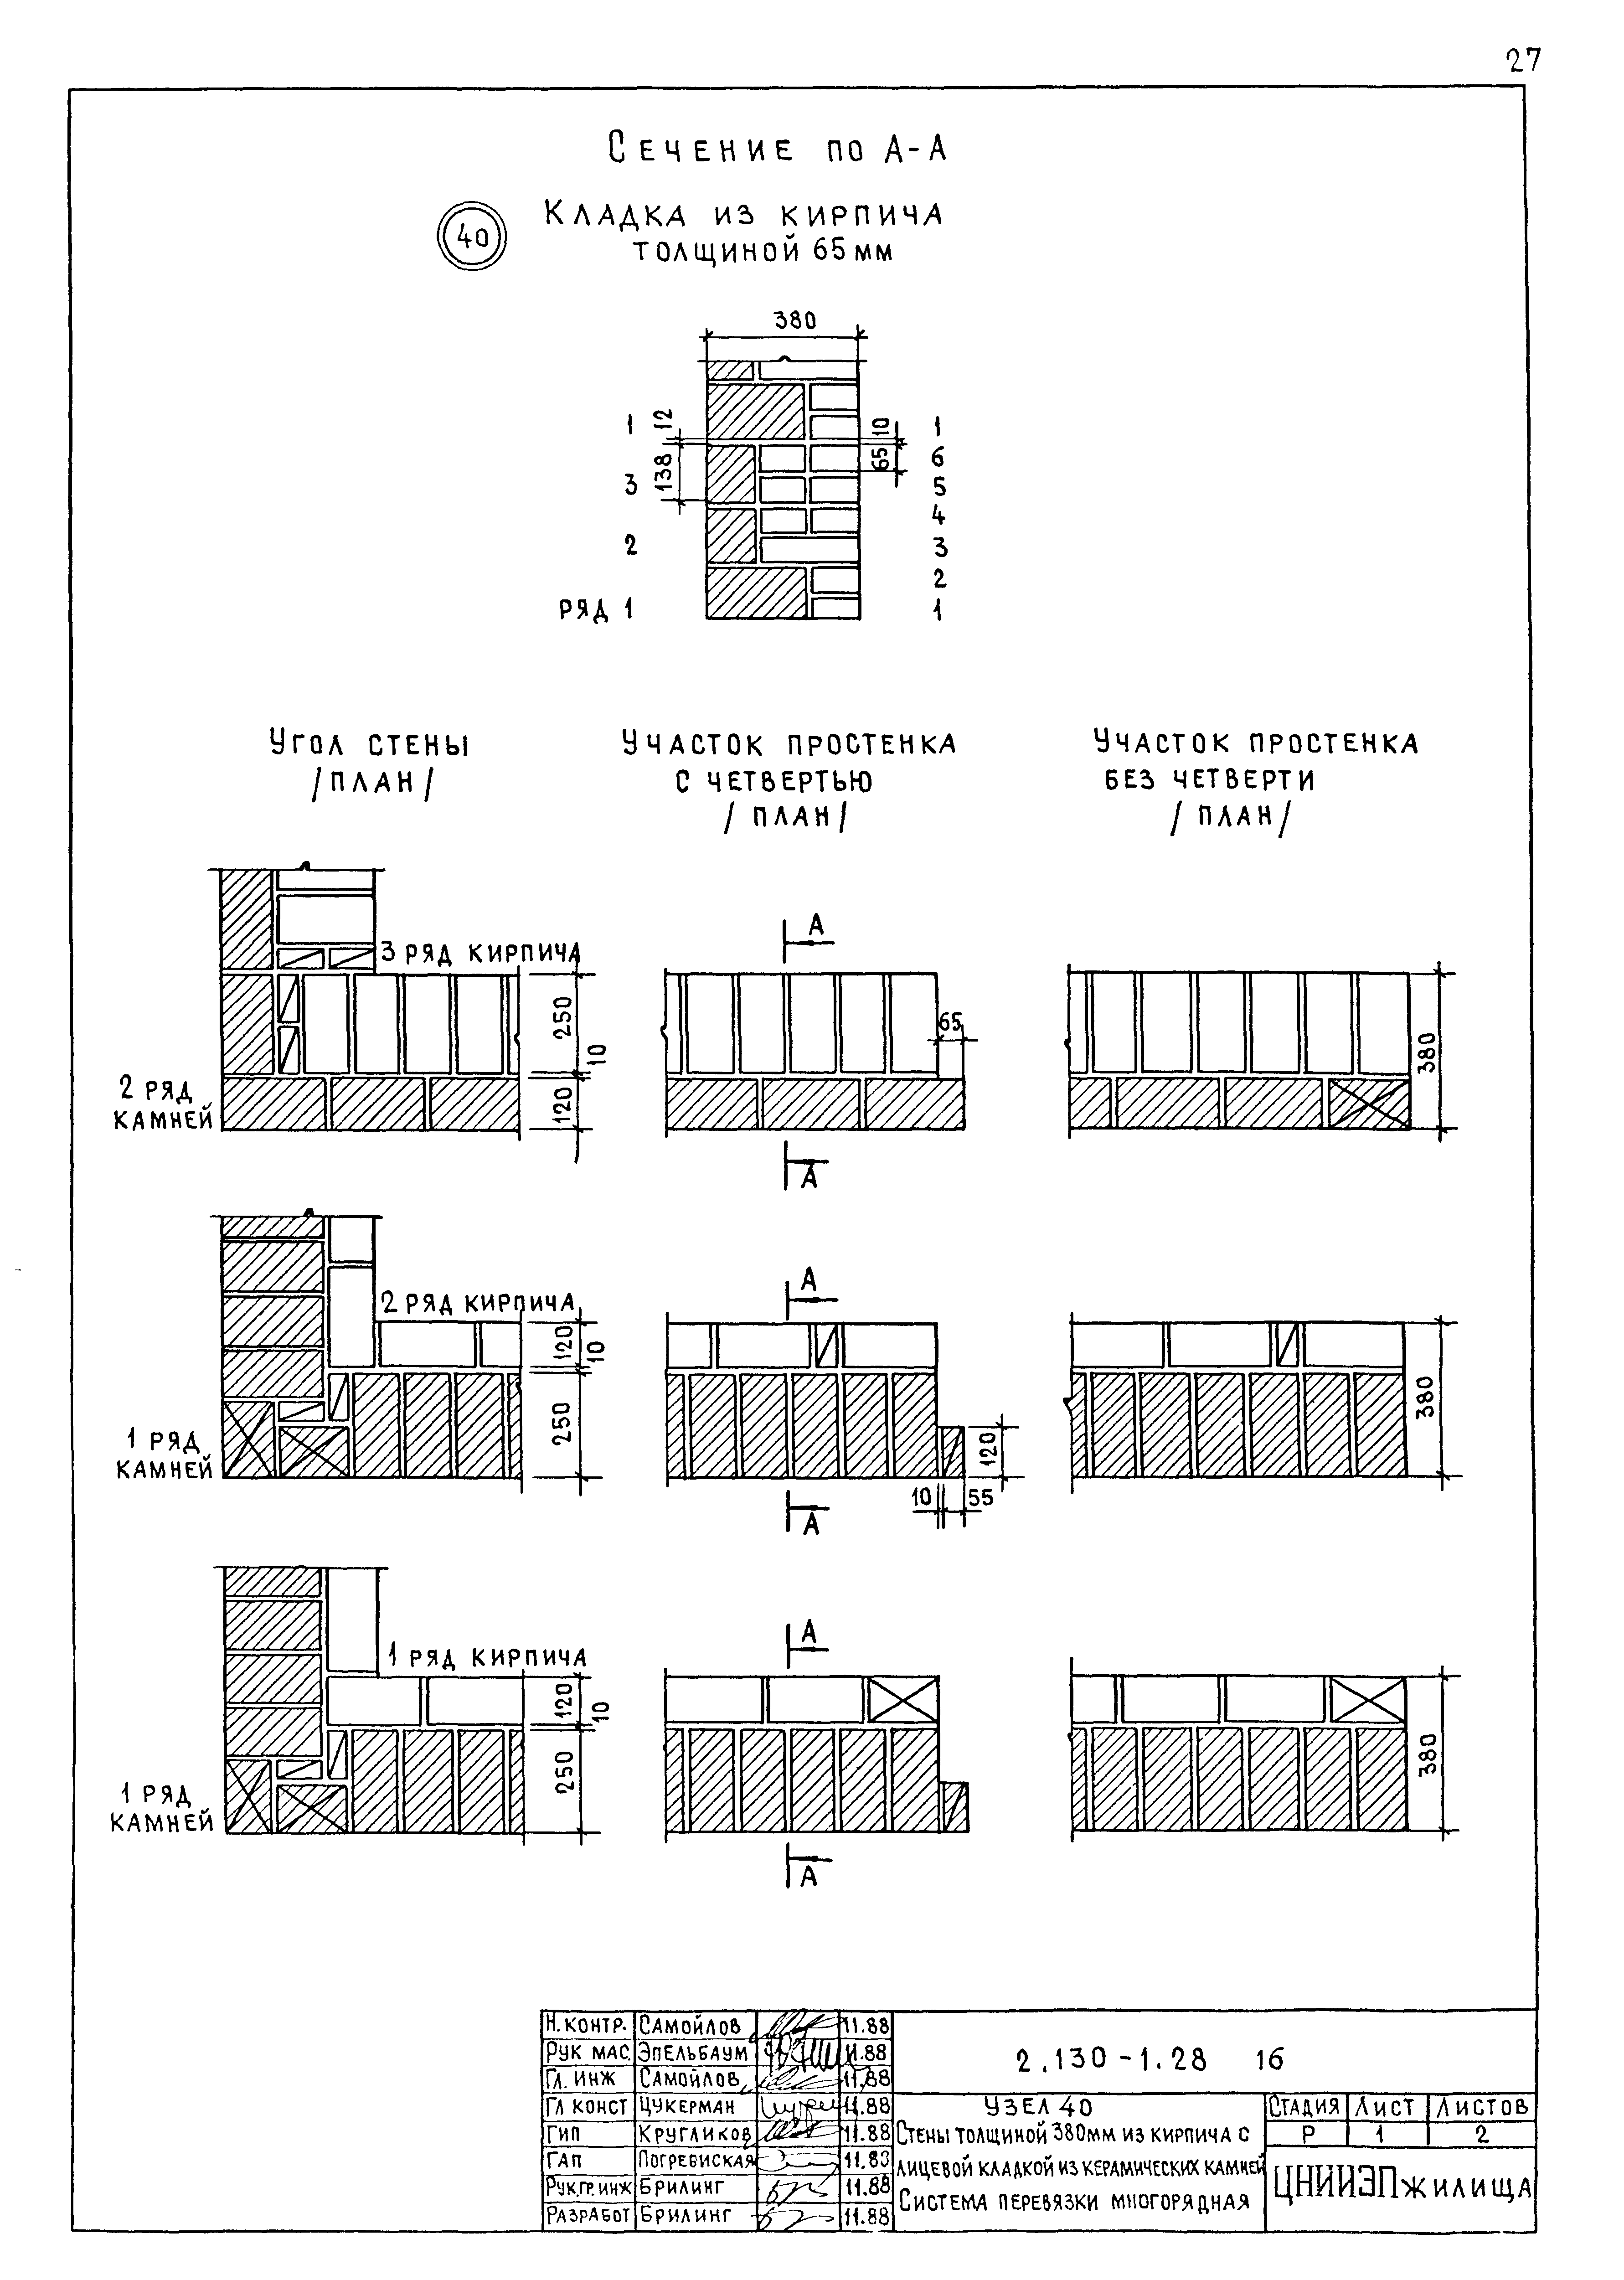 Основные виды перевязки мелкоразмерных элементов в каменной кладке стен